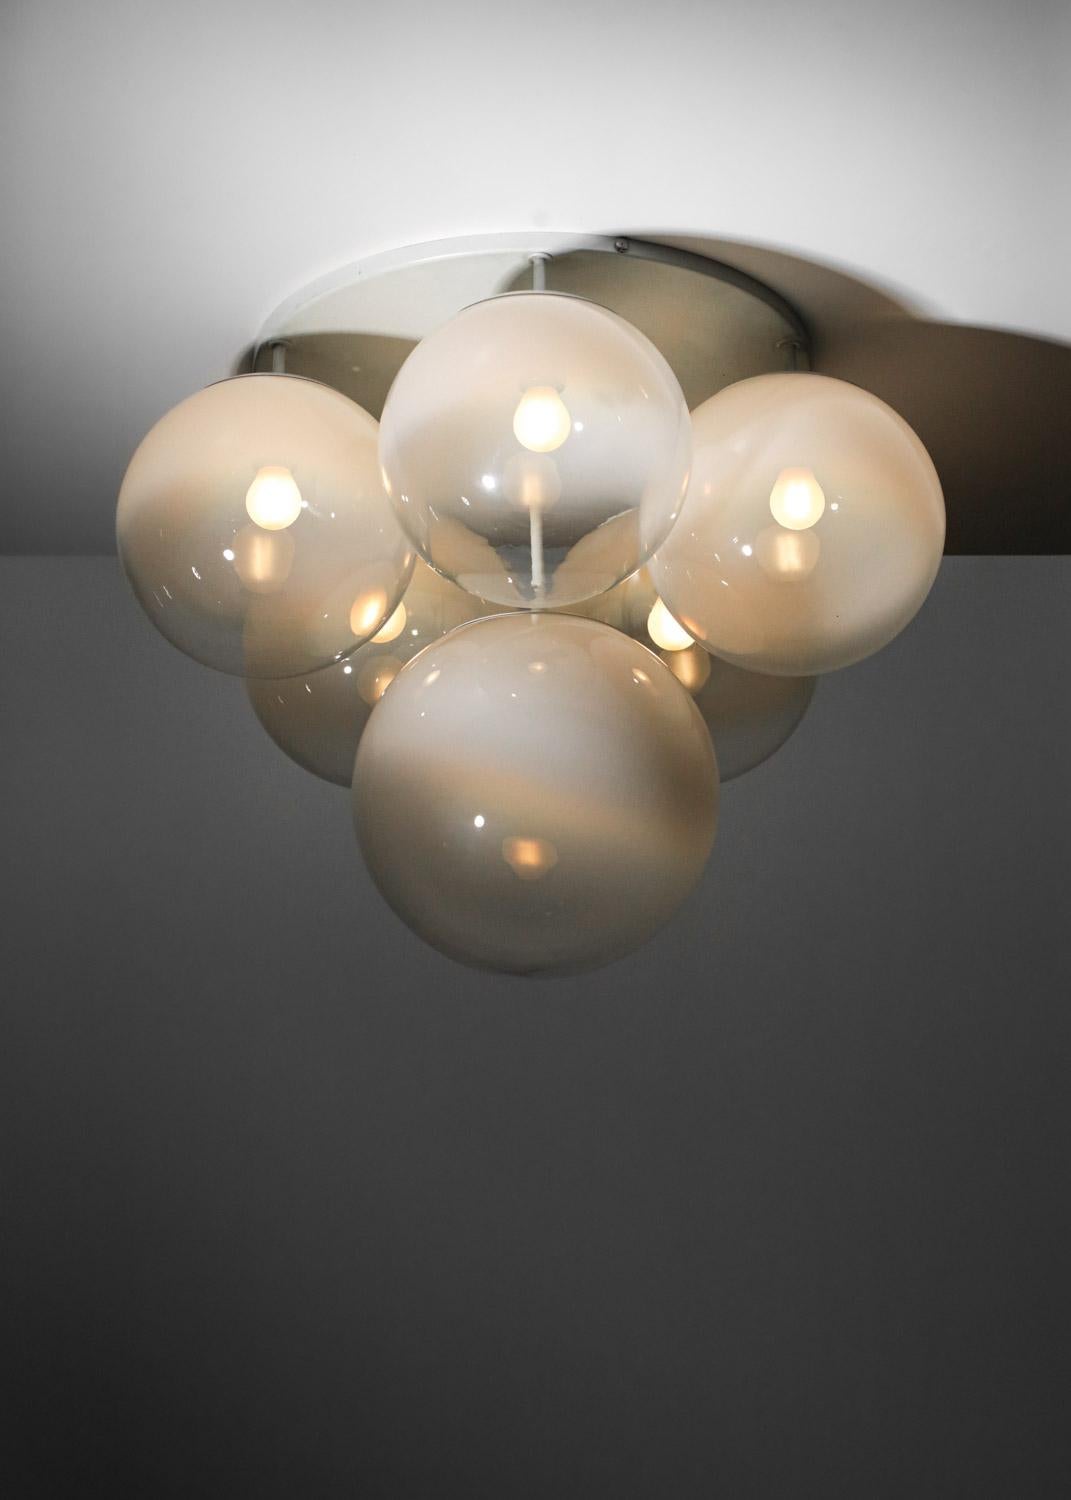 Pair of 70's Italian ceiling lights in Murano glass Gino Sarfatti style - G723 - 1